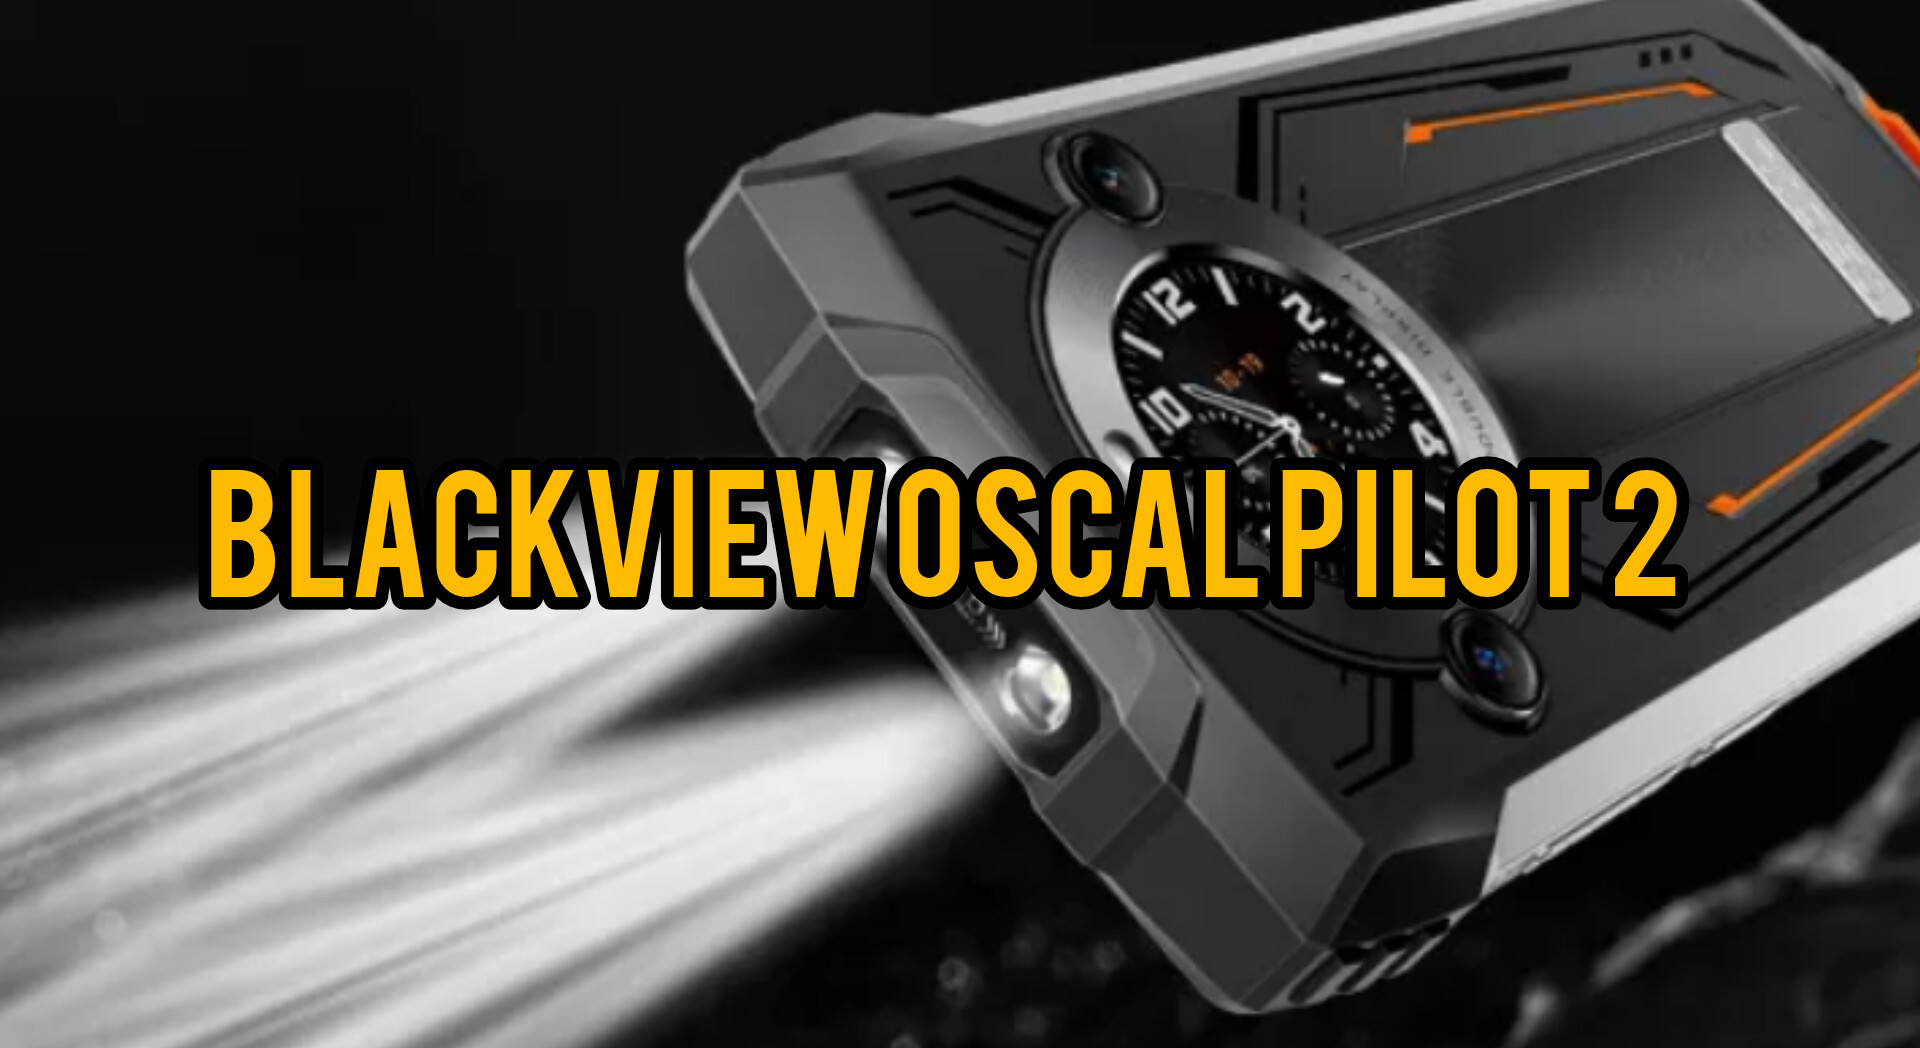 Smartphone Blackview Oscal Pilot 2 Dirilis, Hadir Dengan Dua Layar LCD dan Kaca Pelindung Full HD